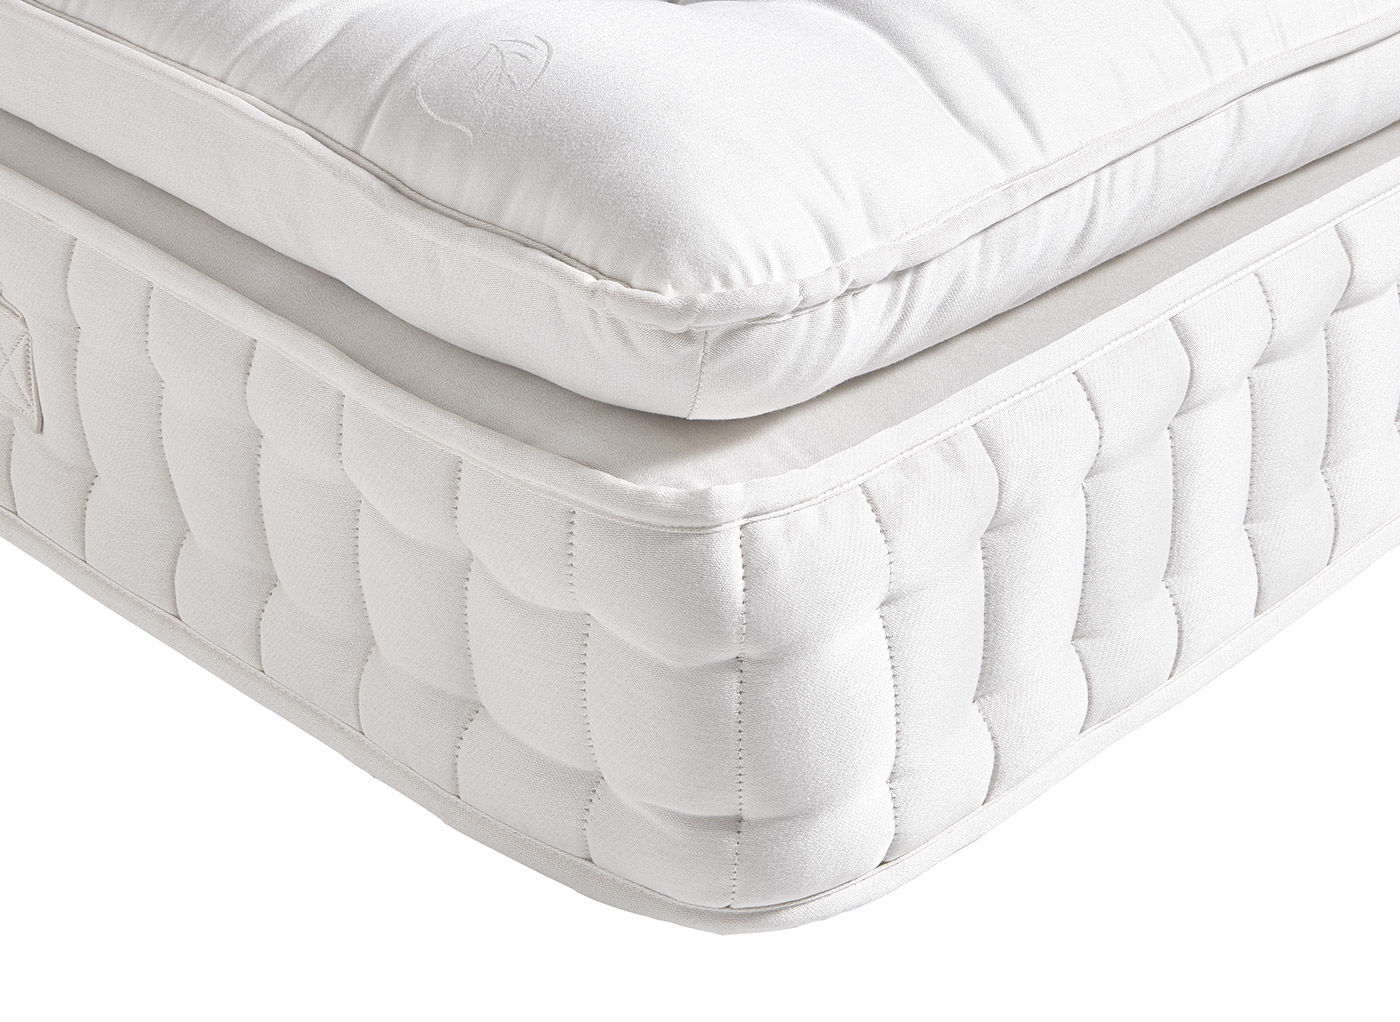 soft fluffy mattress topper